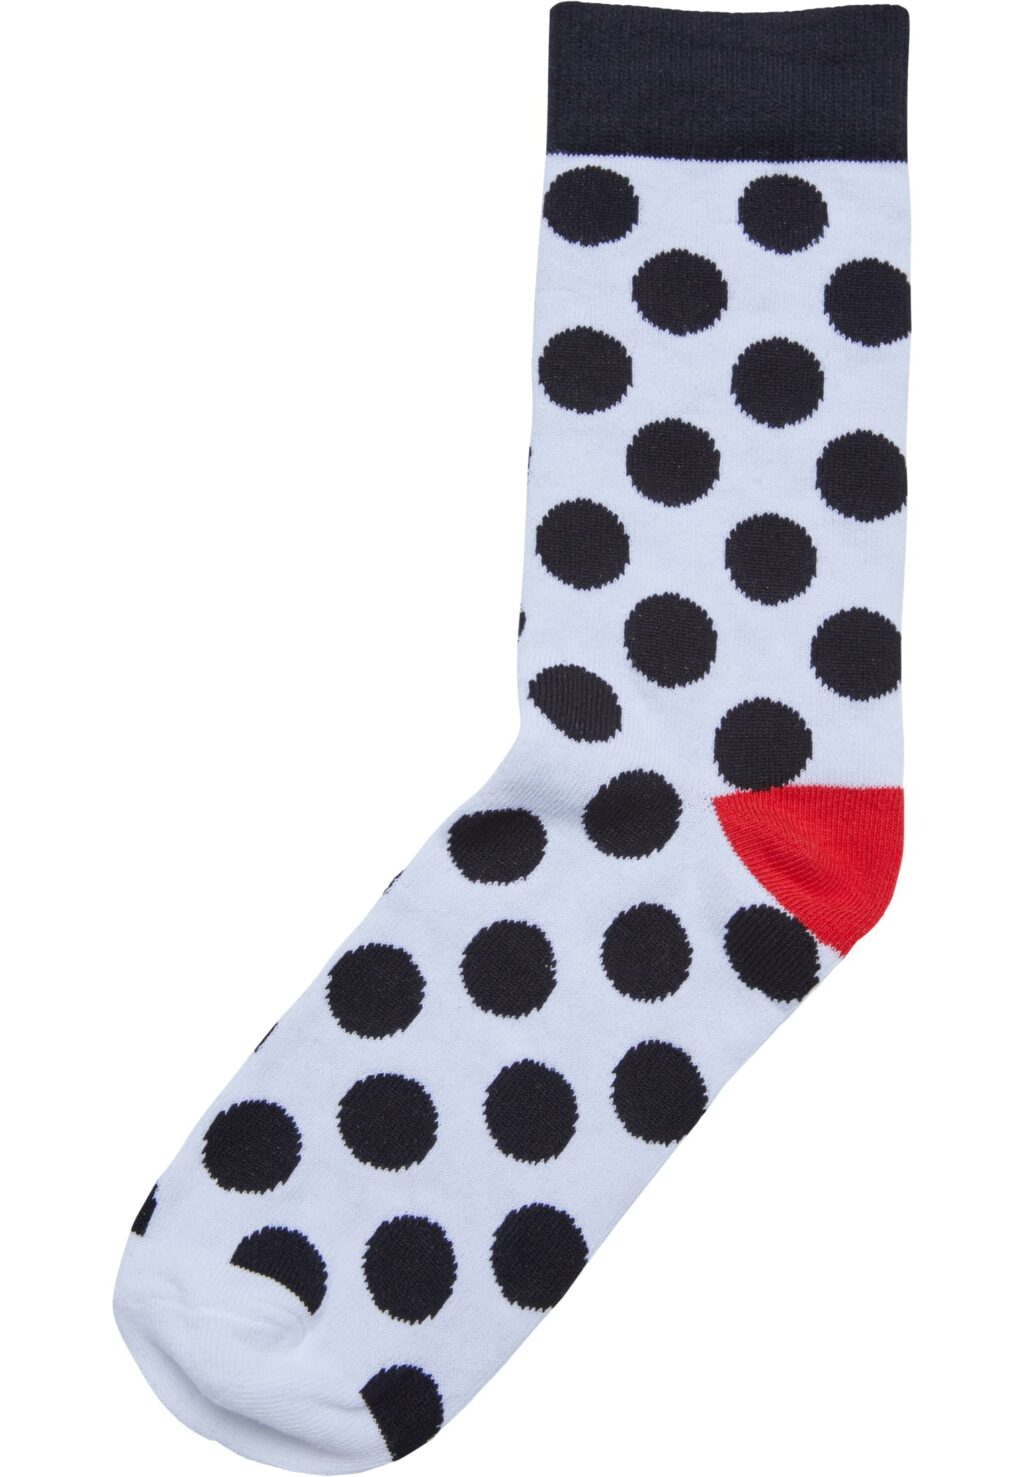 Basic Polka Dot Socks 3-Pack white/black TB6805